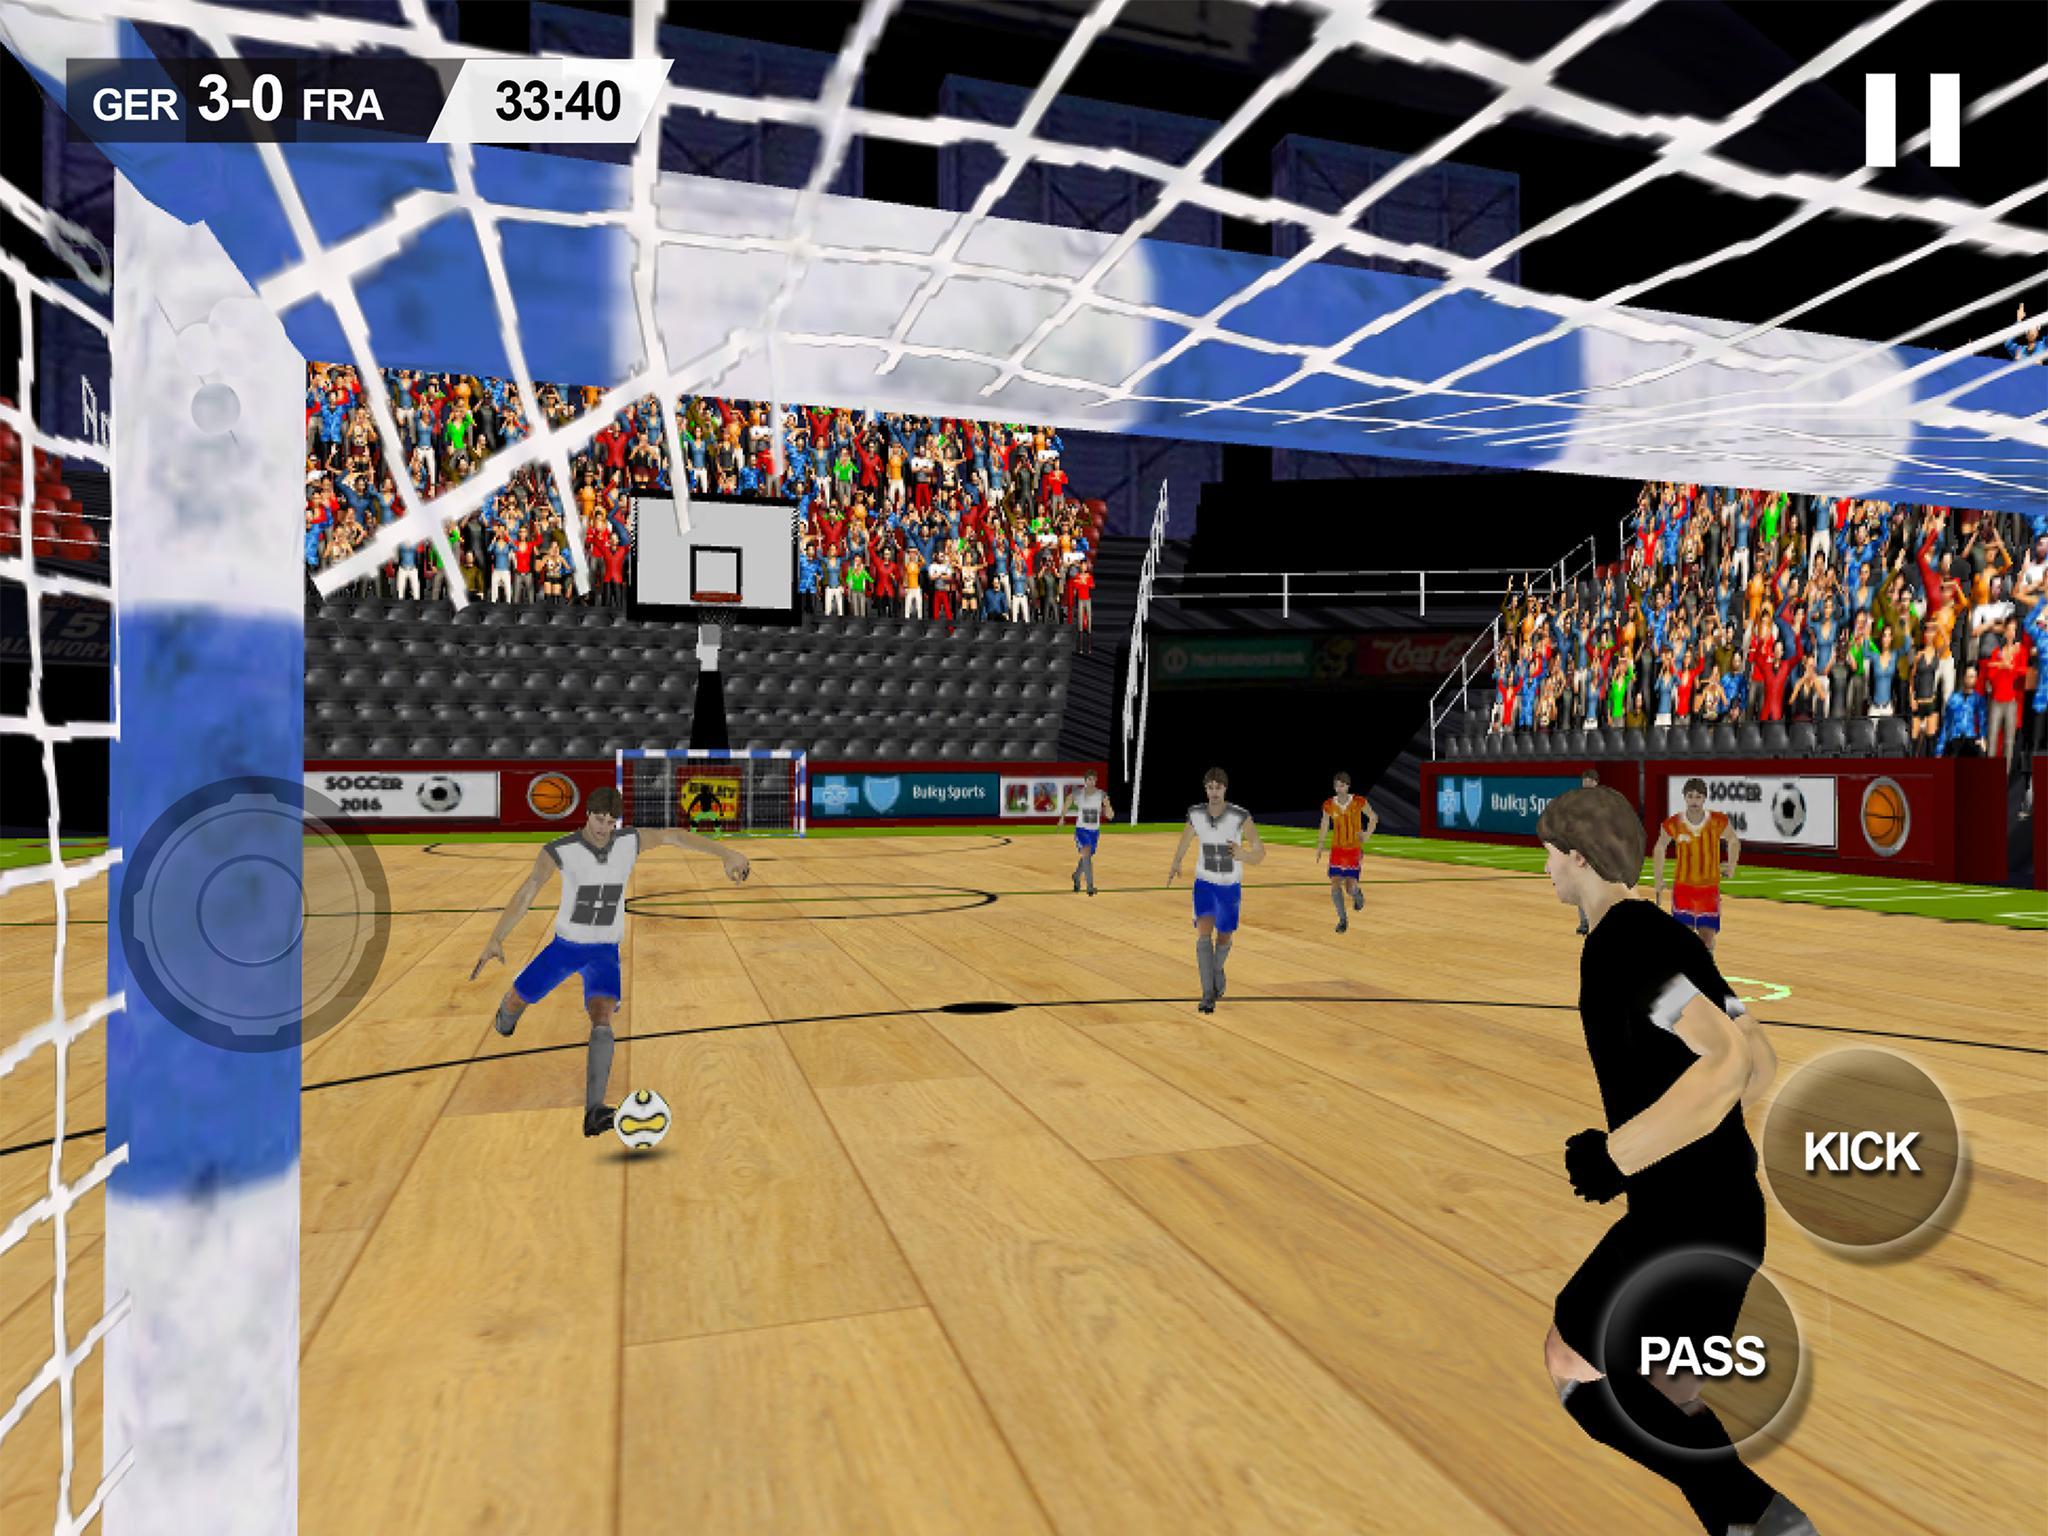 Android 用の 屋内サッカーゲーム2016 Apk をダウンロード